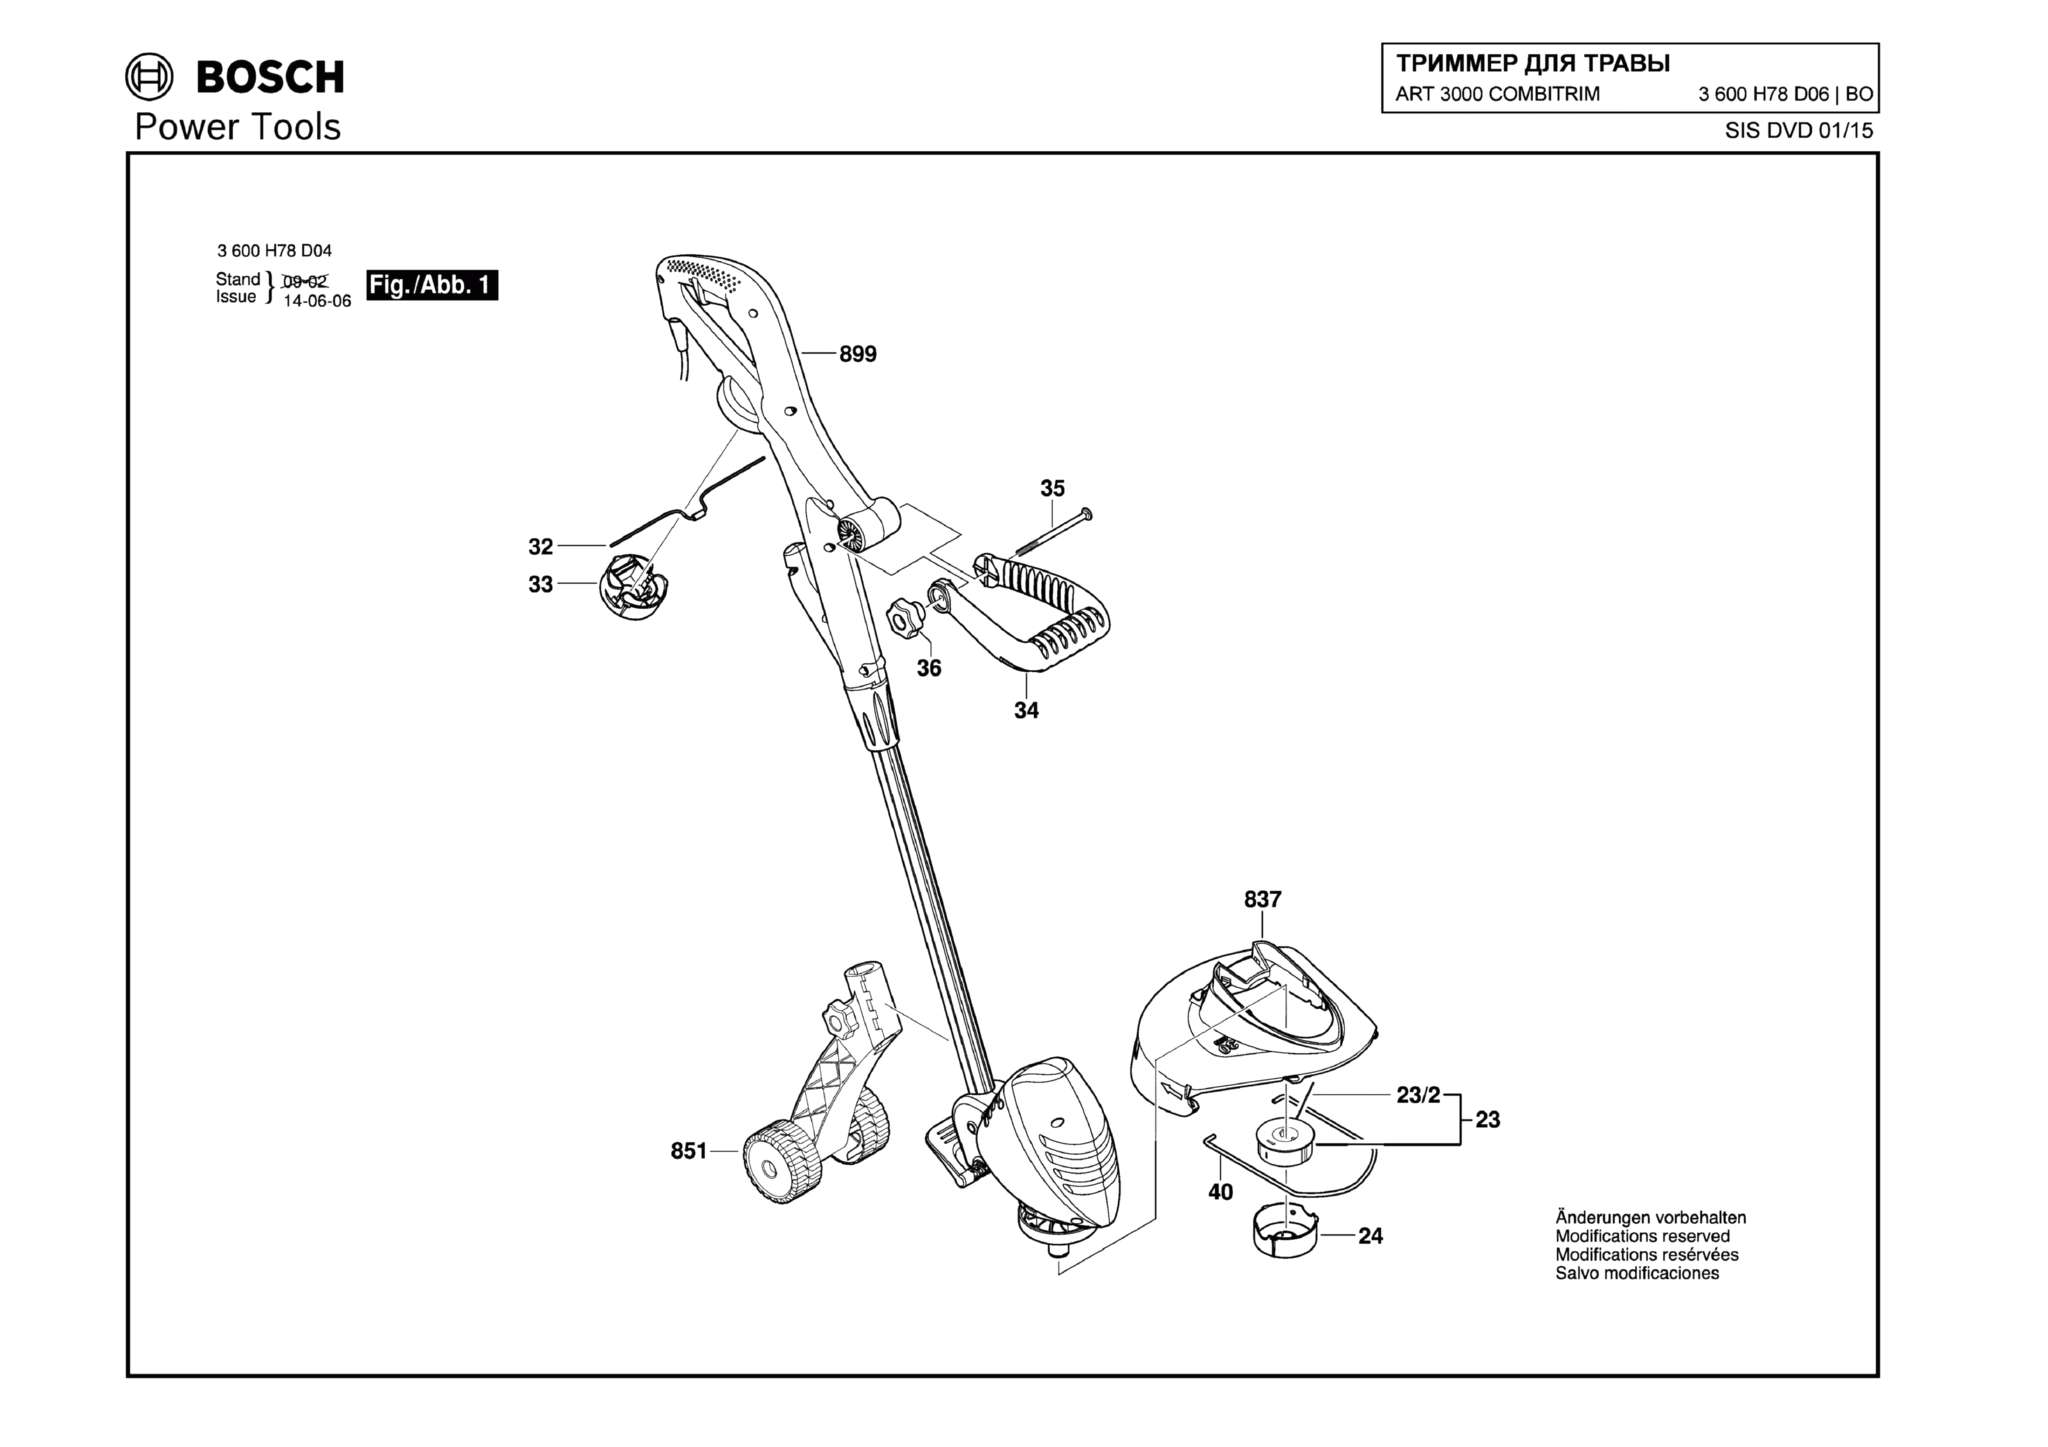 Запчасти, схема и деталировка Bosch ART 3000 COMBITRIM (ТИП 3600H78D06)